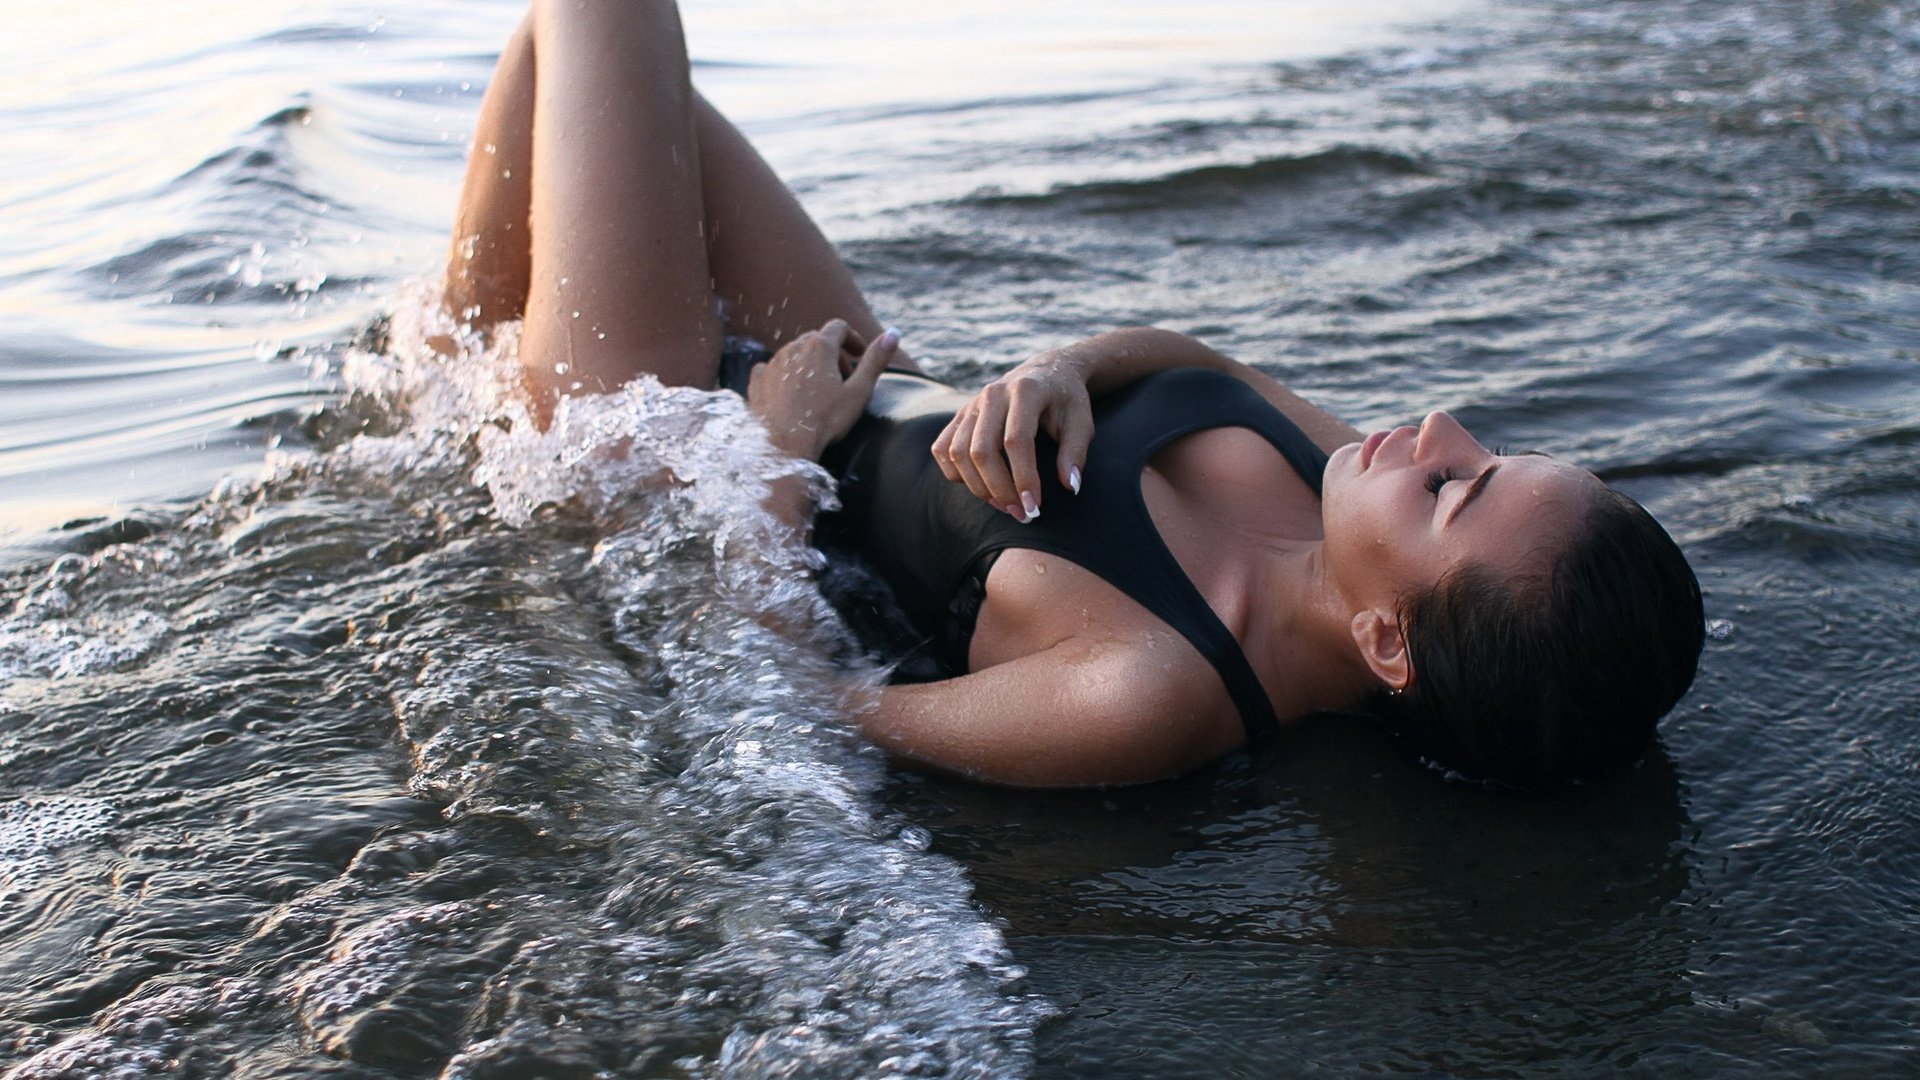 Девка голой нежится на мокром песке 15 фото эротики